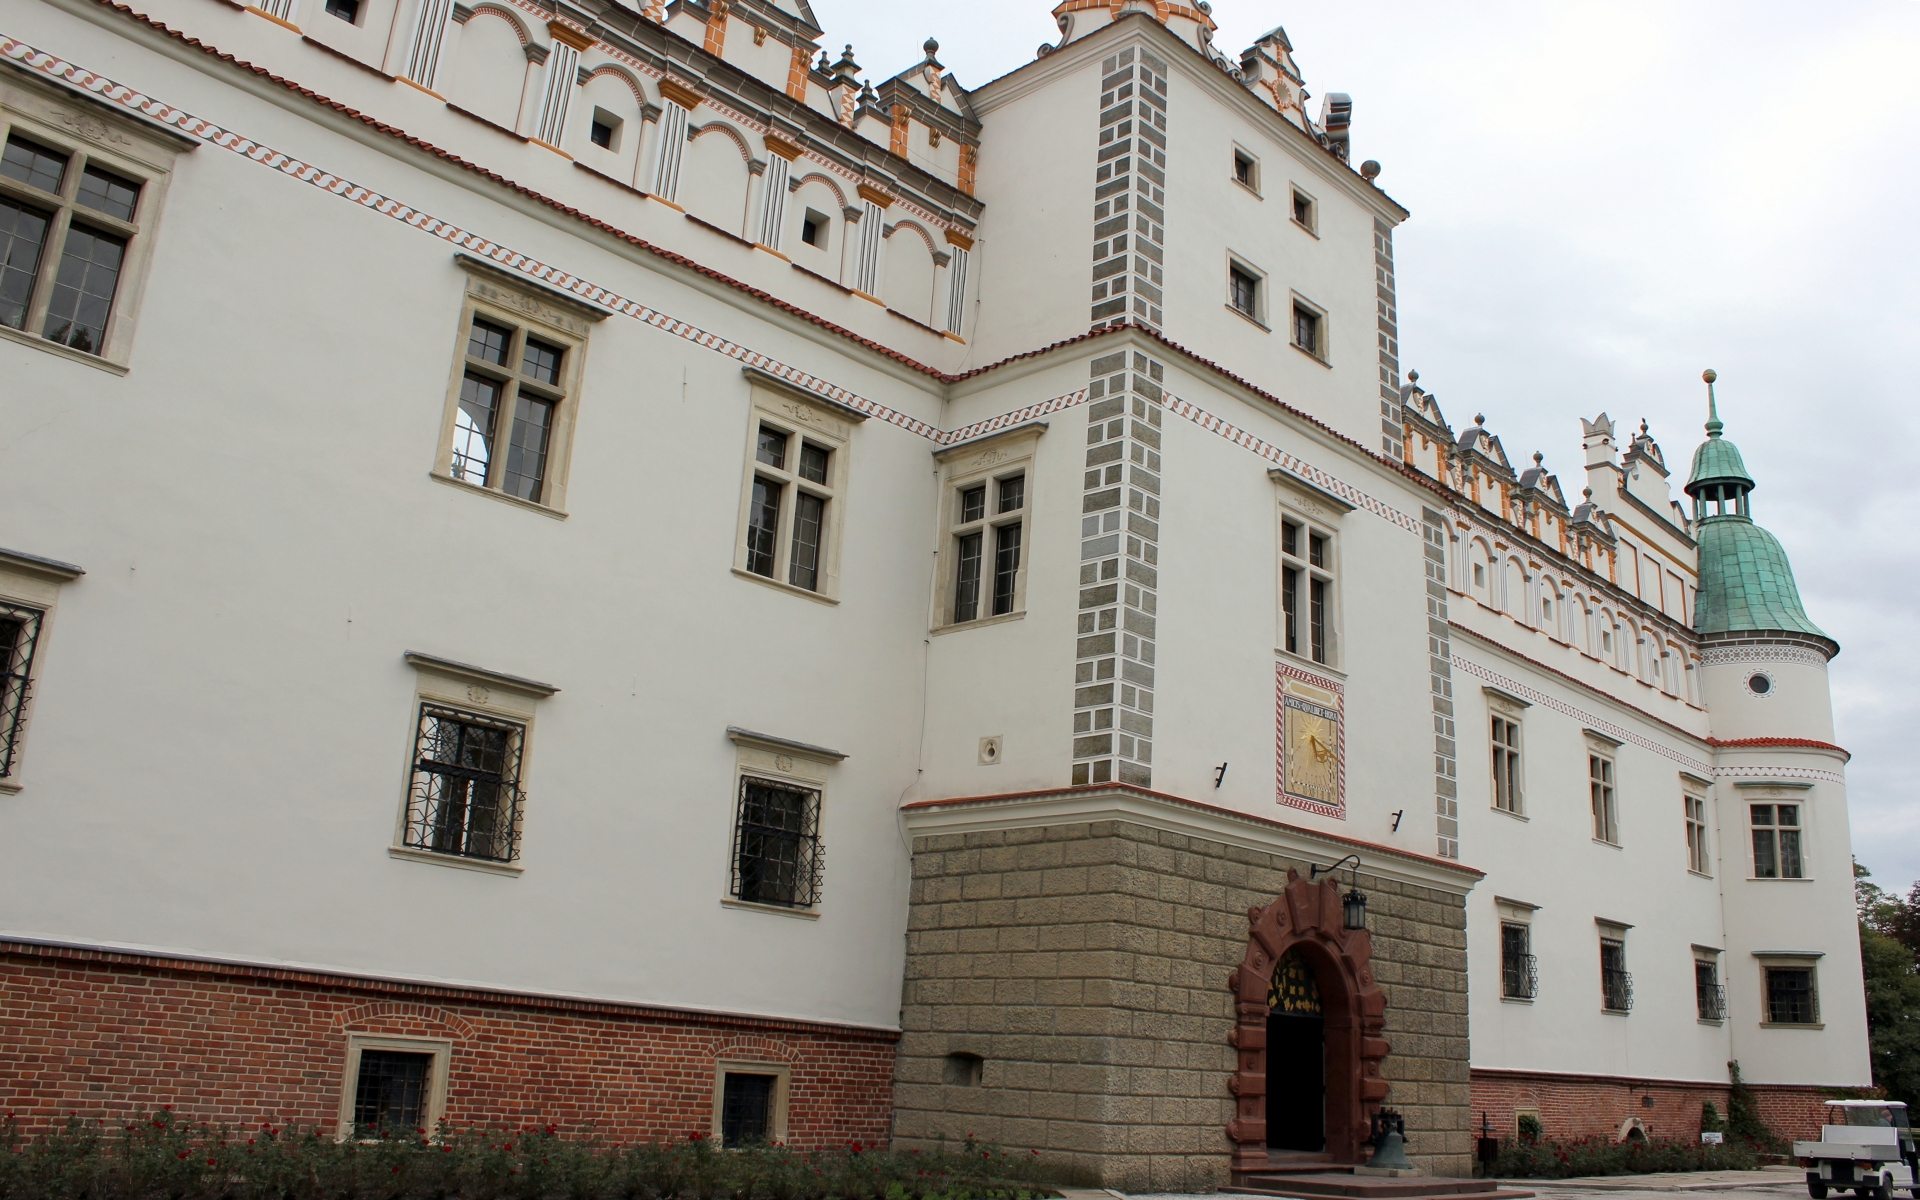 Baranгіw Sandomierski Castle Wallpapers